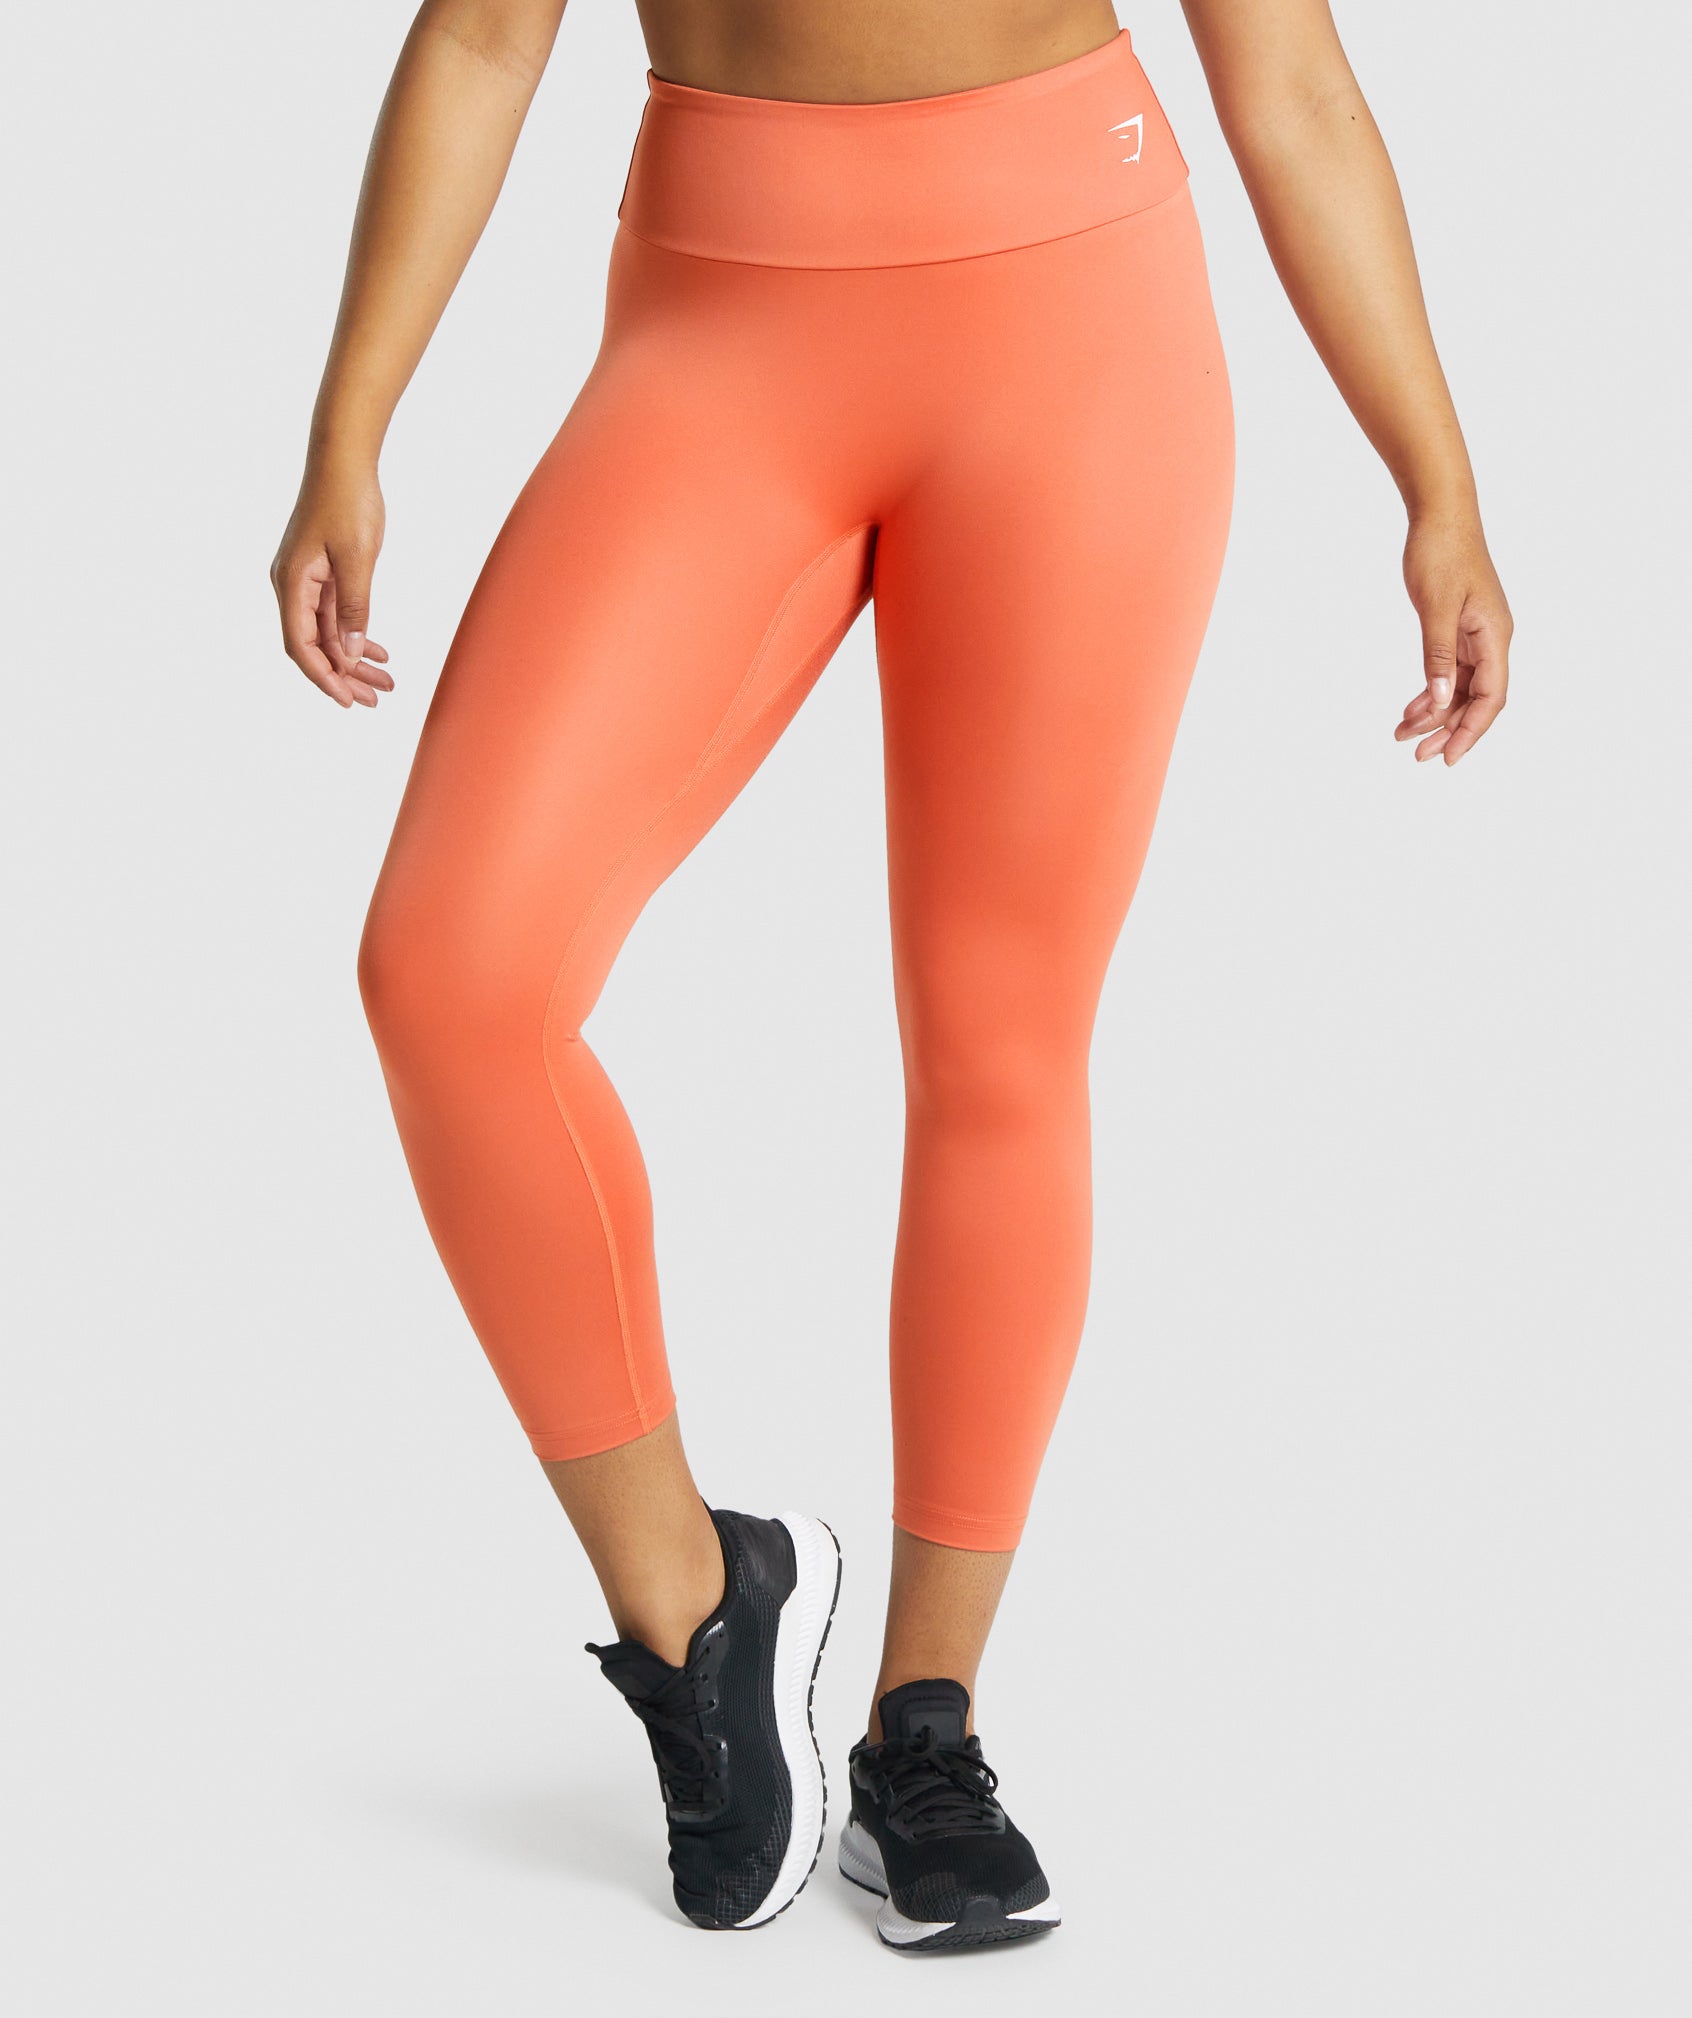 Leggings Gymshark Orange size S International in Polyester - 26632510